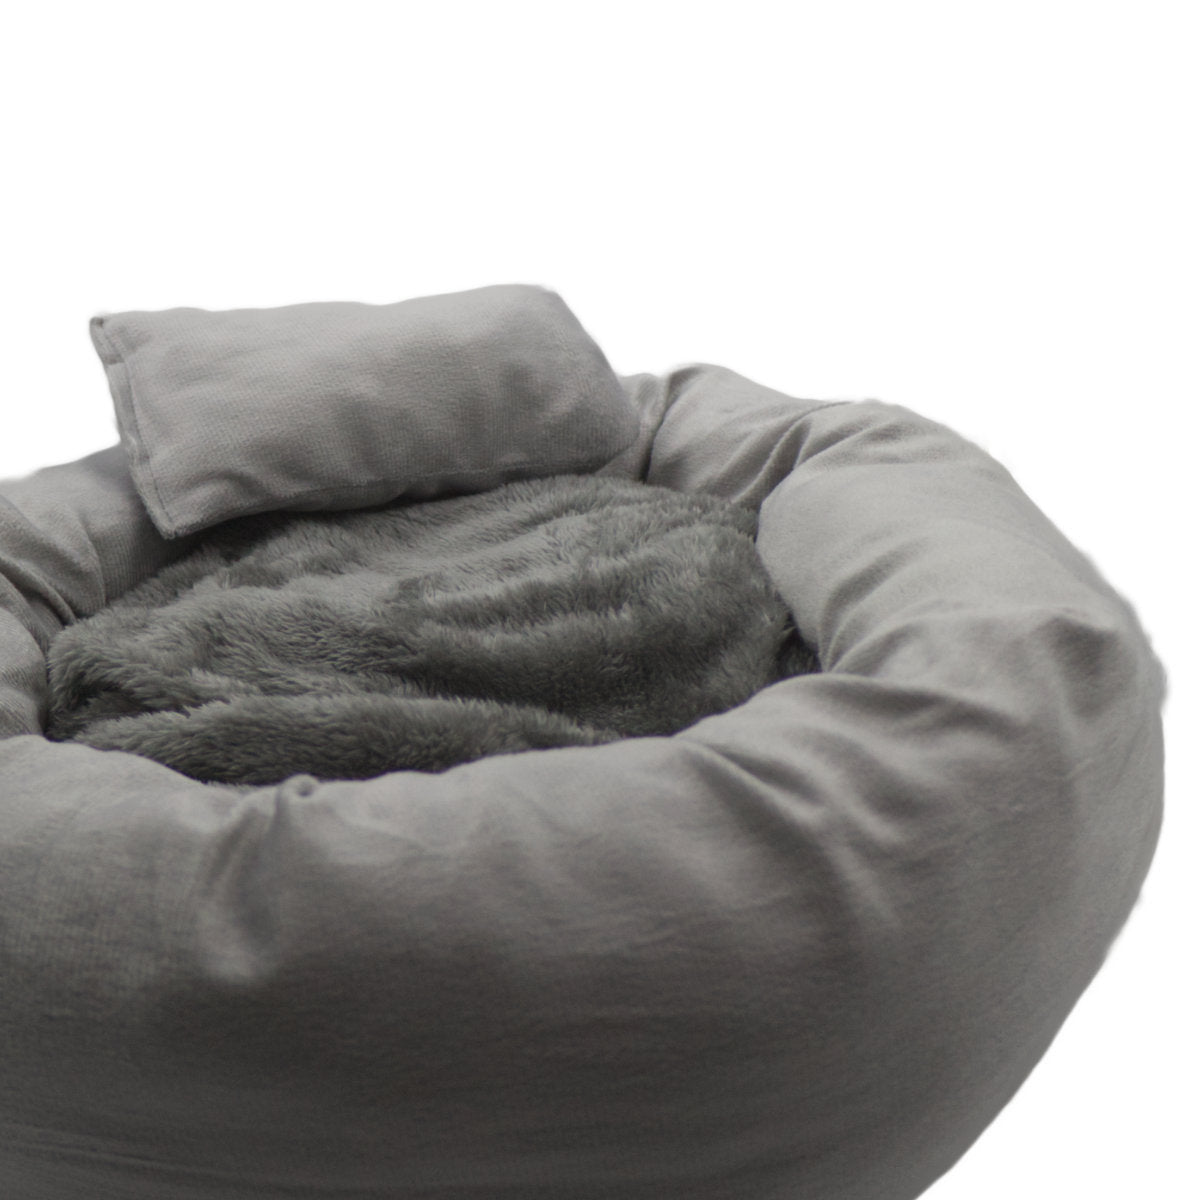 comfy cat bed | cat tart bed | cat accessories | cat shop